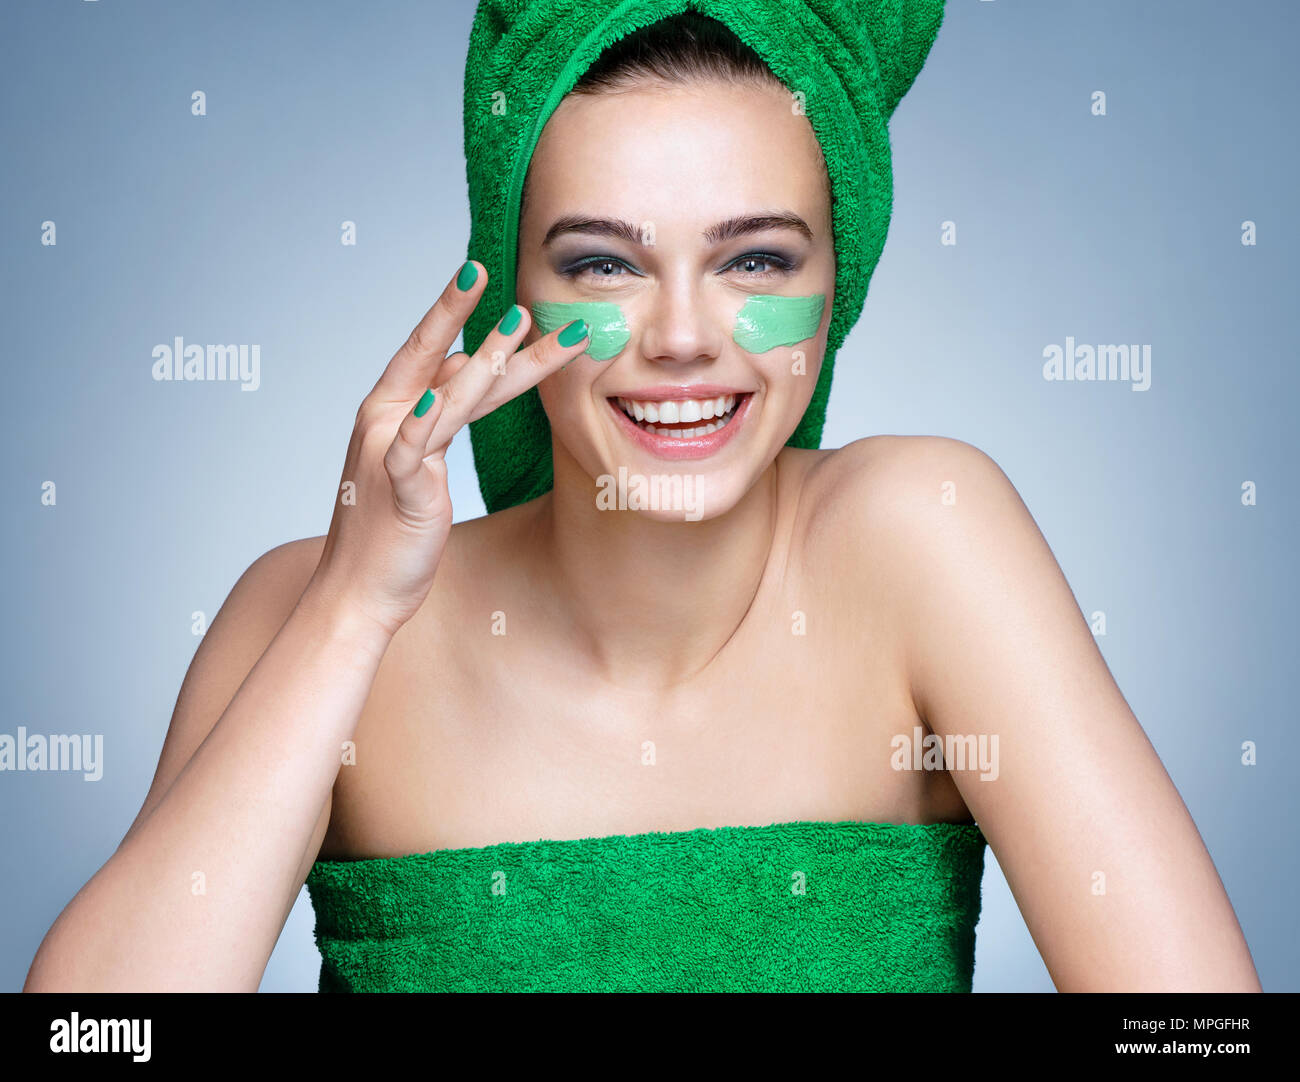 Lachende Mädchen in grün Bettwäsche anwenden, feuchtigkeitsspendende Creme im Gesicht. Foto von Mädchen mit makelloser Haut auf blauem Hintergrund. Hautpflege und Schönheit conce Stockfoto